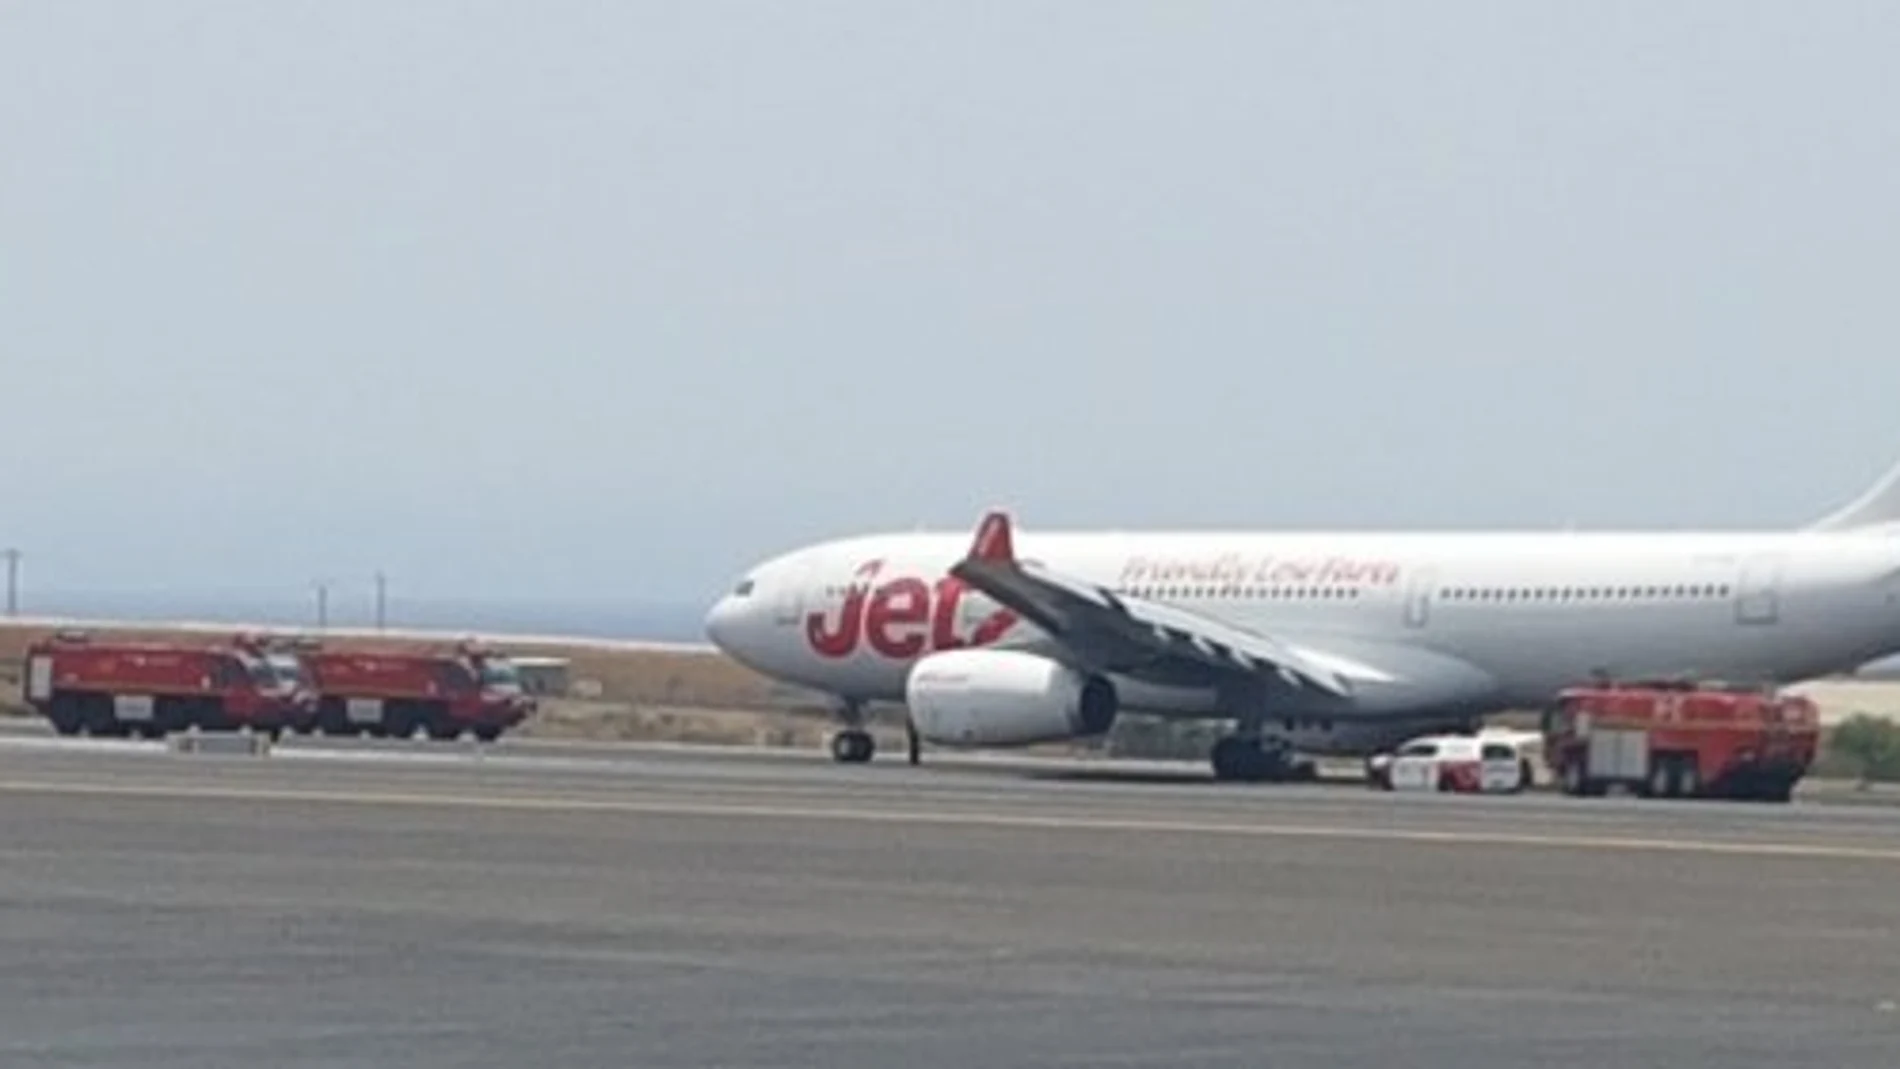 Un avión procedente de Manchester revienta dos ruedas al aterrizar en Tenerife Sur